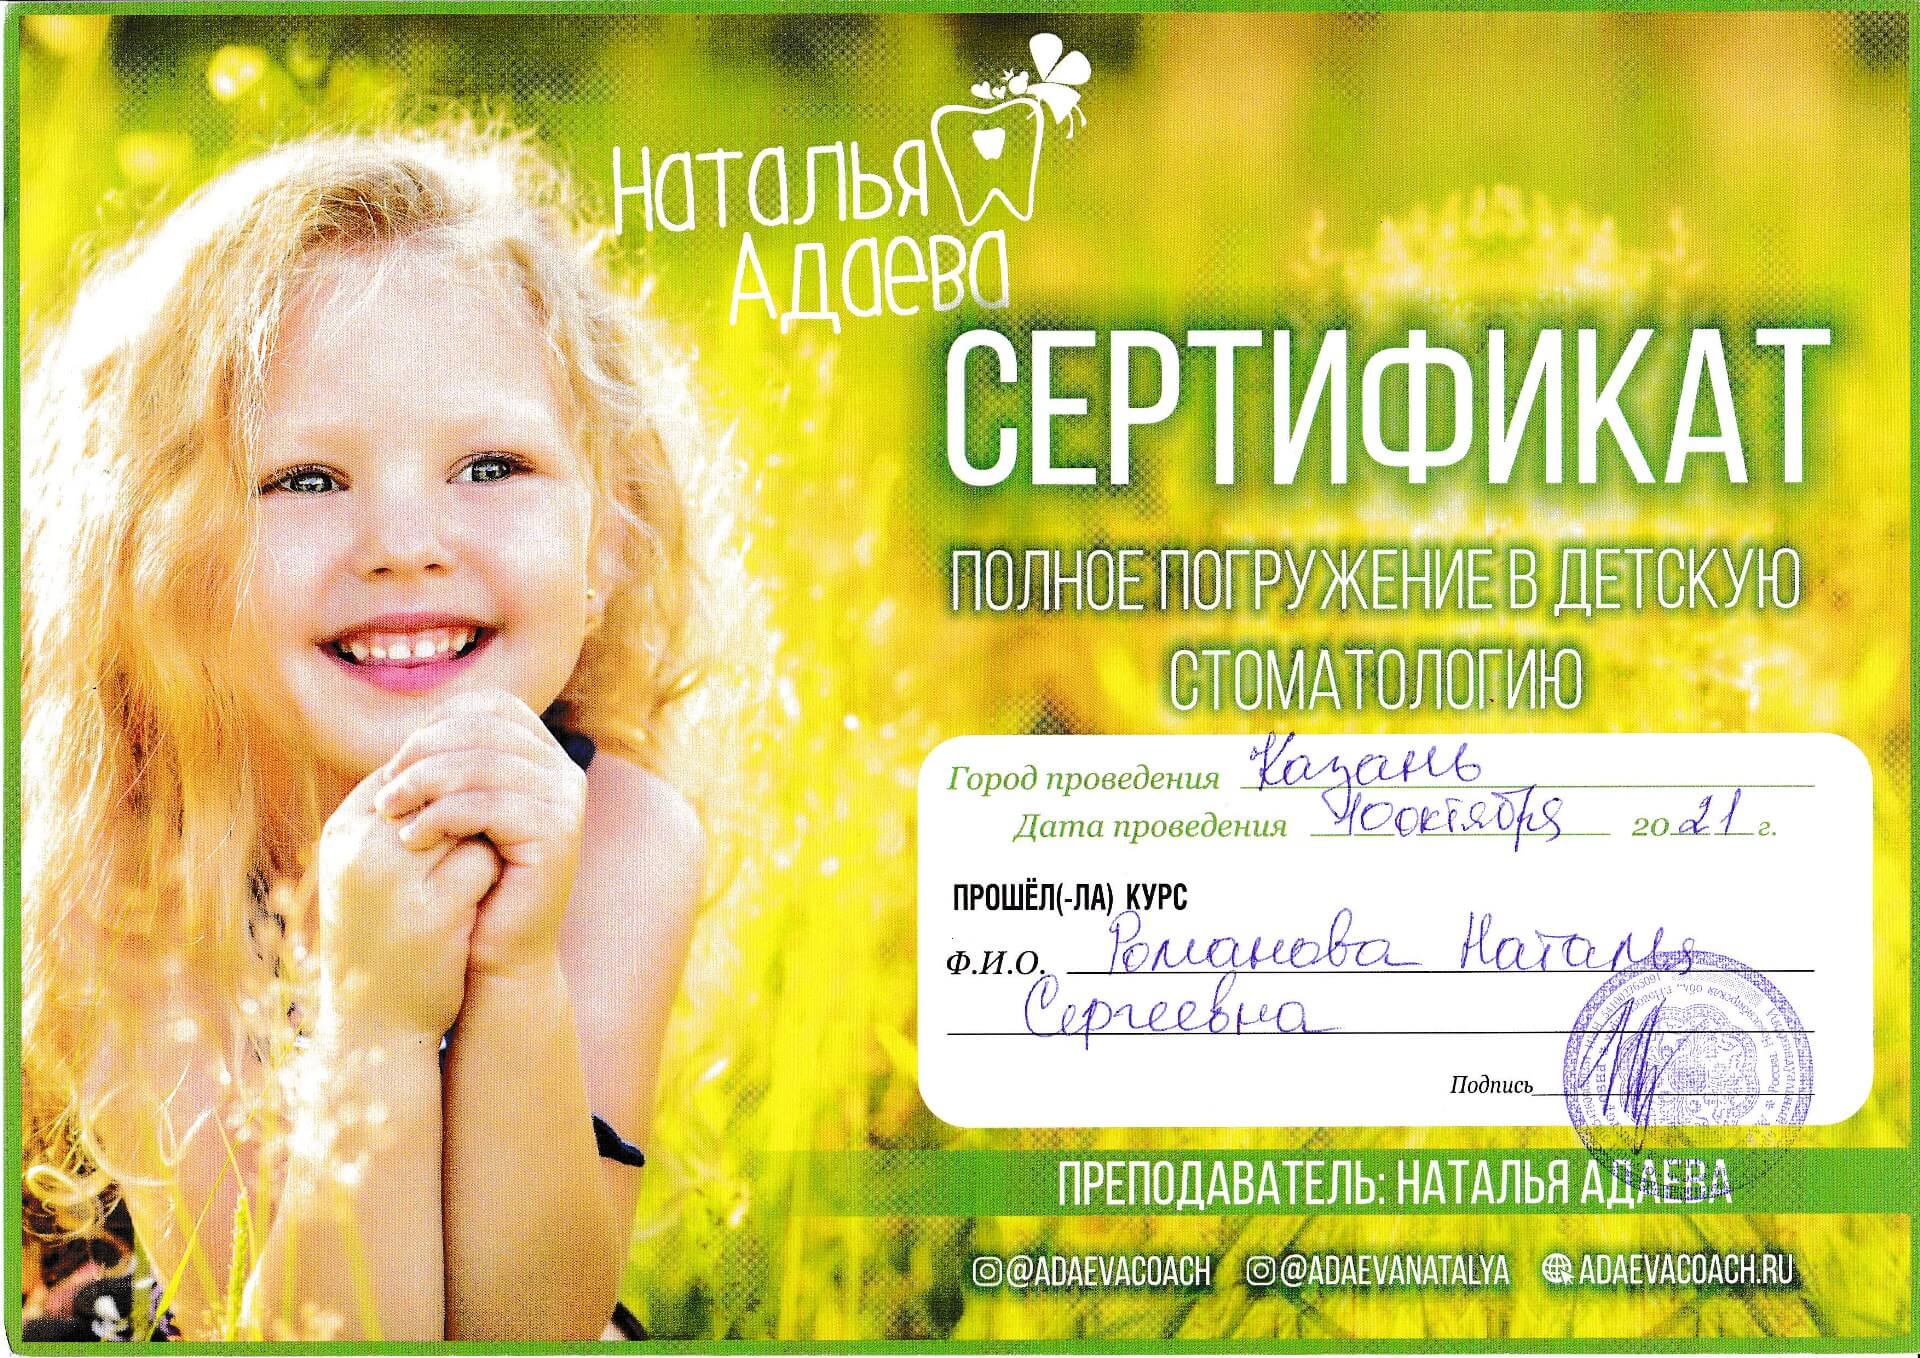 Сертификат - Романова Наталья